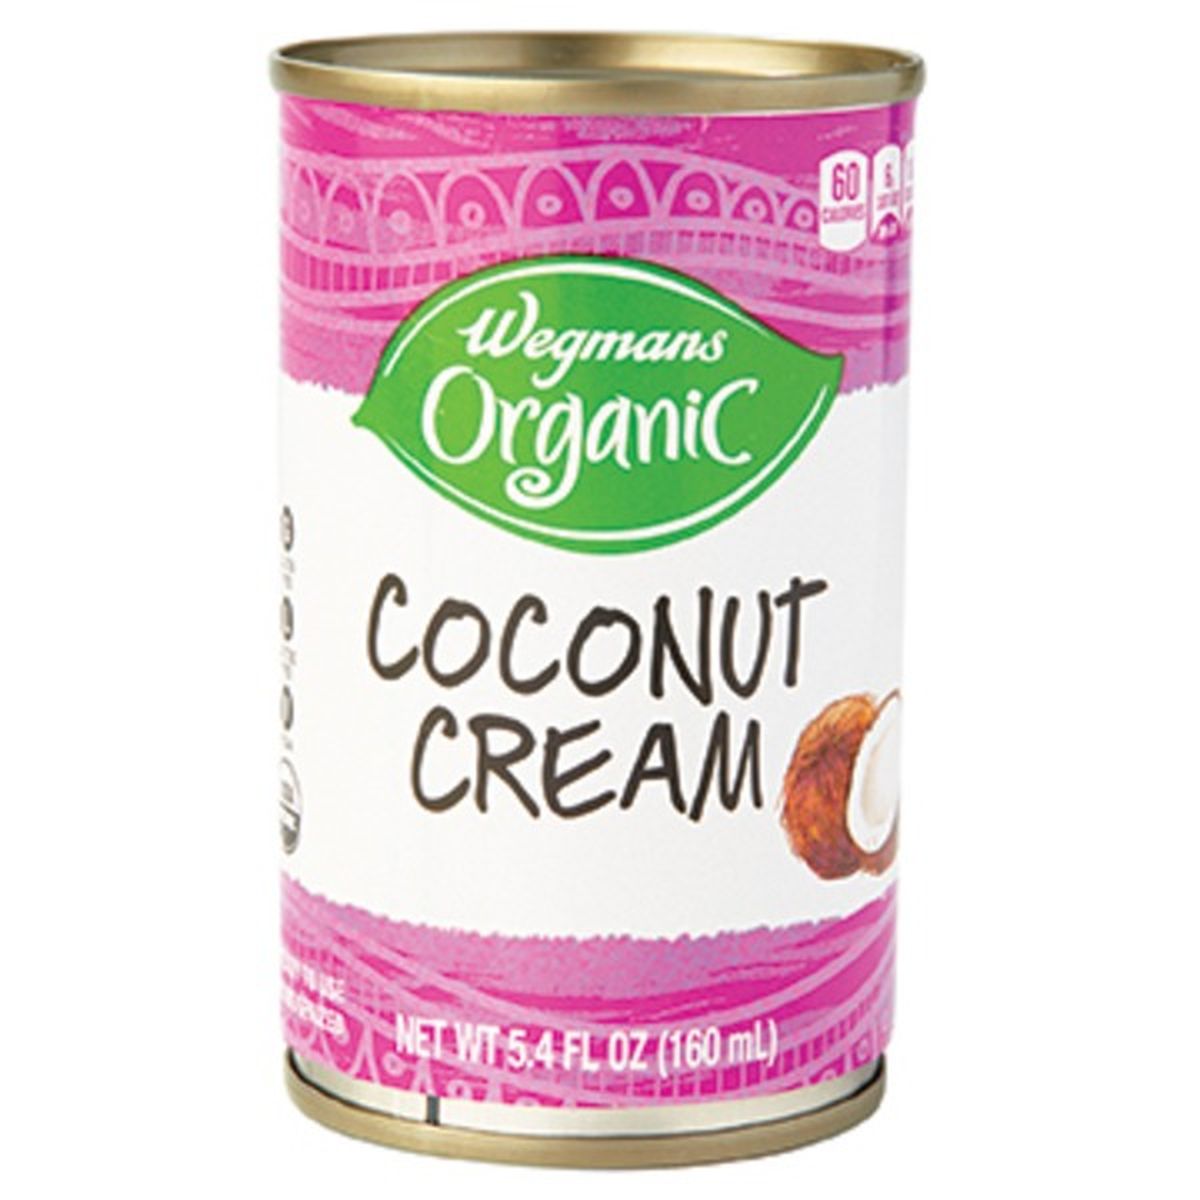 Calories in Wegmans Organic Coconut Cream